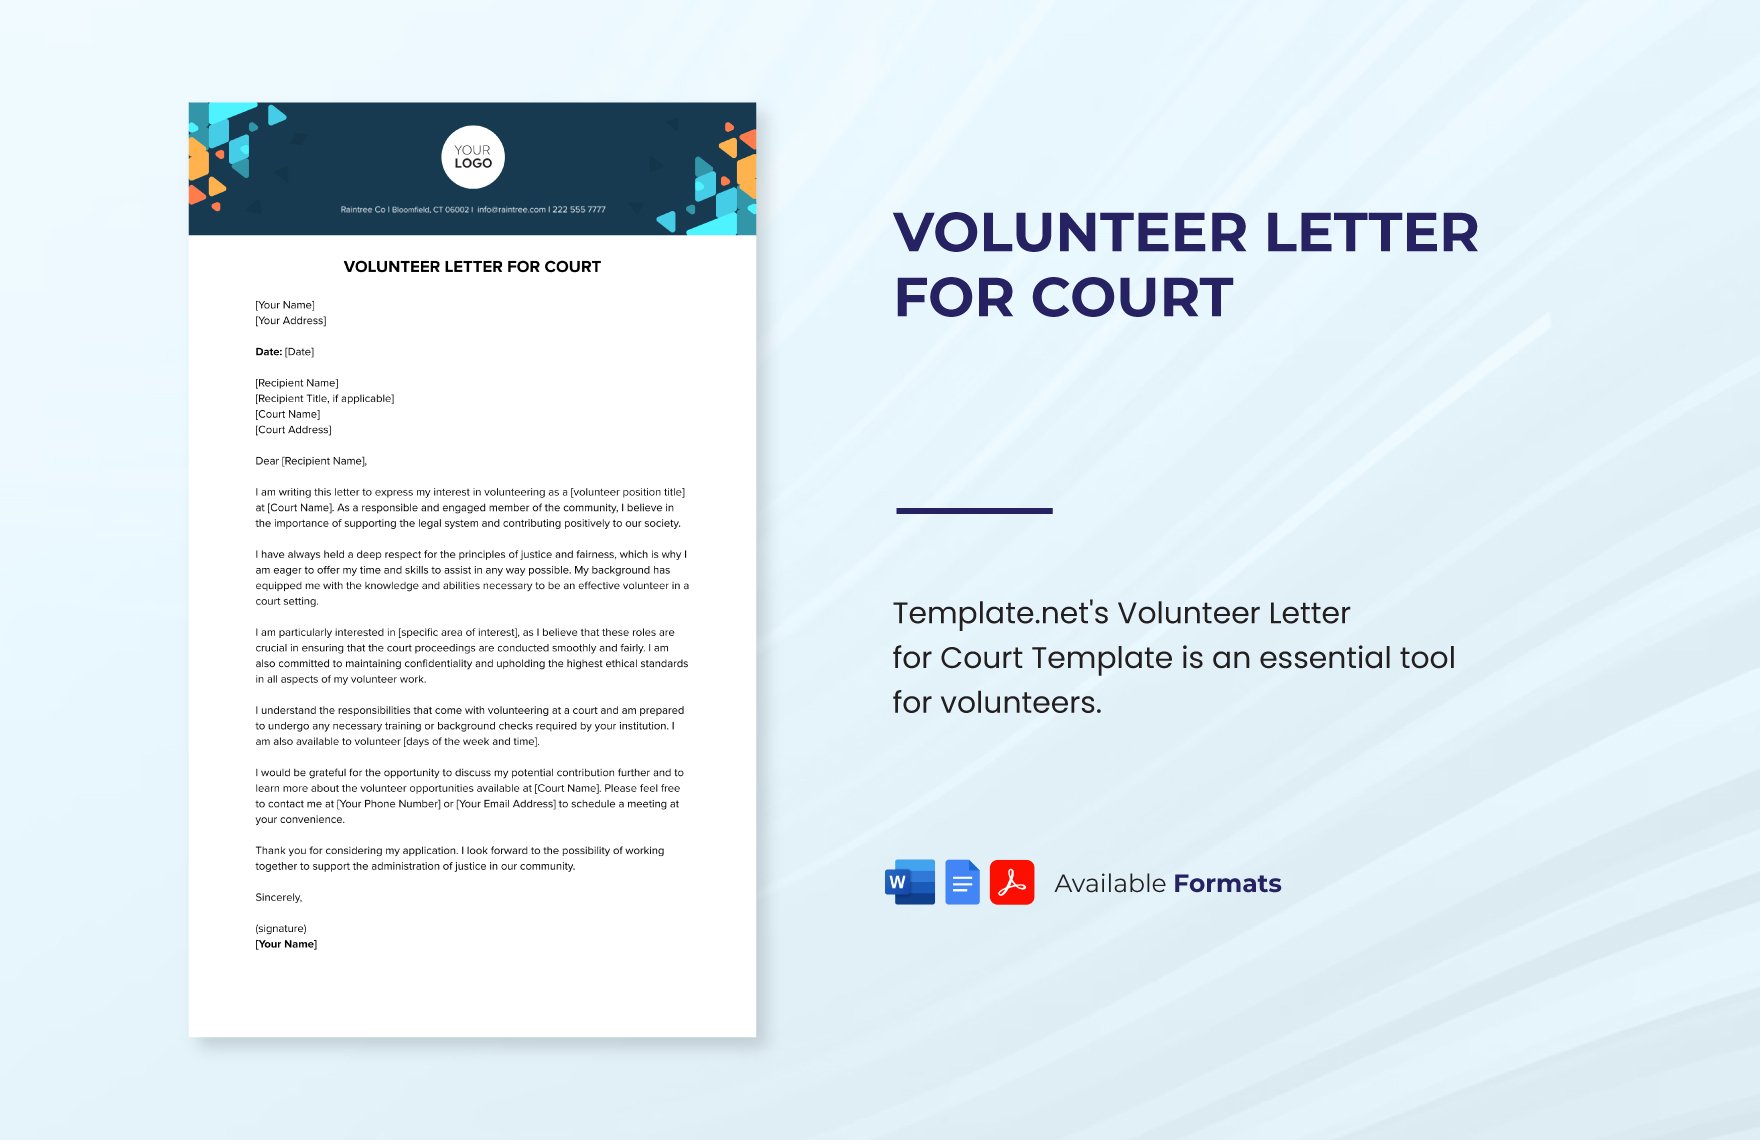 Volunteer Letter for Court